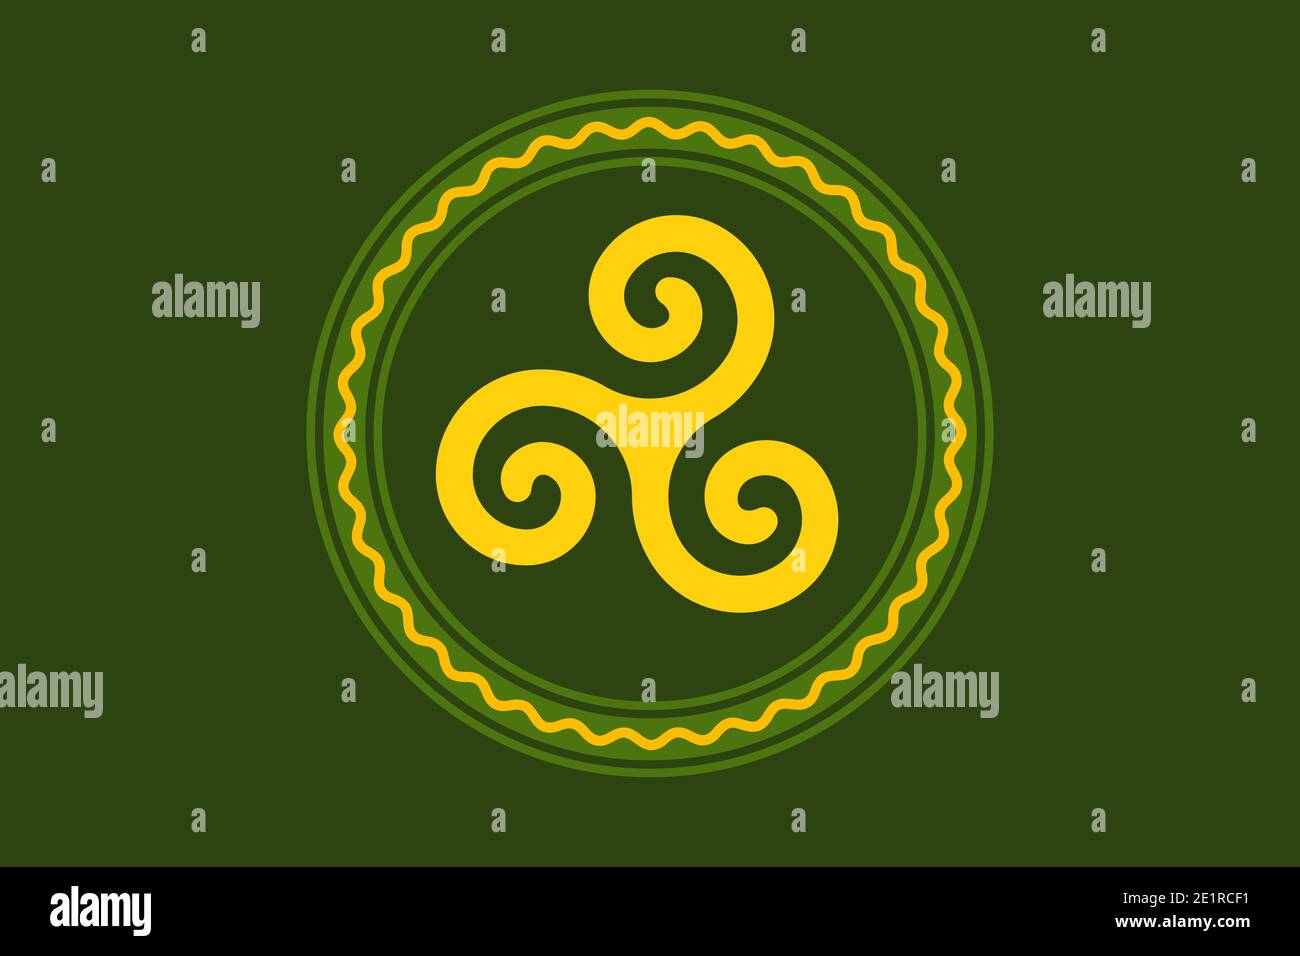 Gelbe Triskele, in einem grünen Kreisrahmen mit Serpentinenlinie, über Moosgrün. Triskelion, altes Symbol und Motiv, bestehend aus einer dreifachen Spirale. Stockfoto